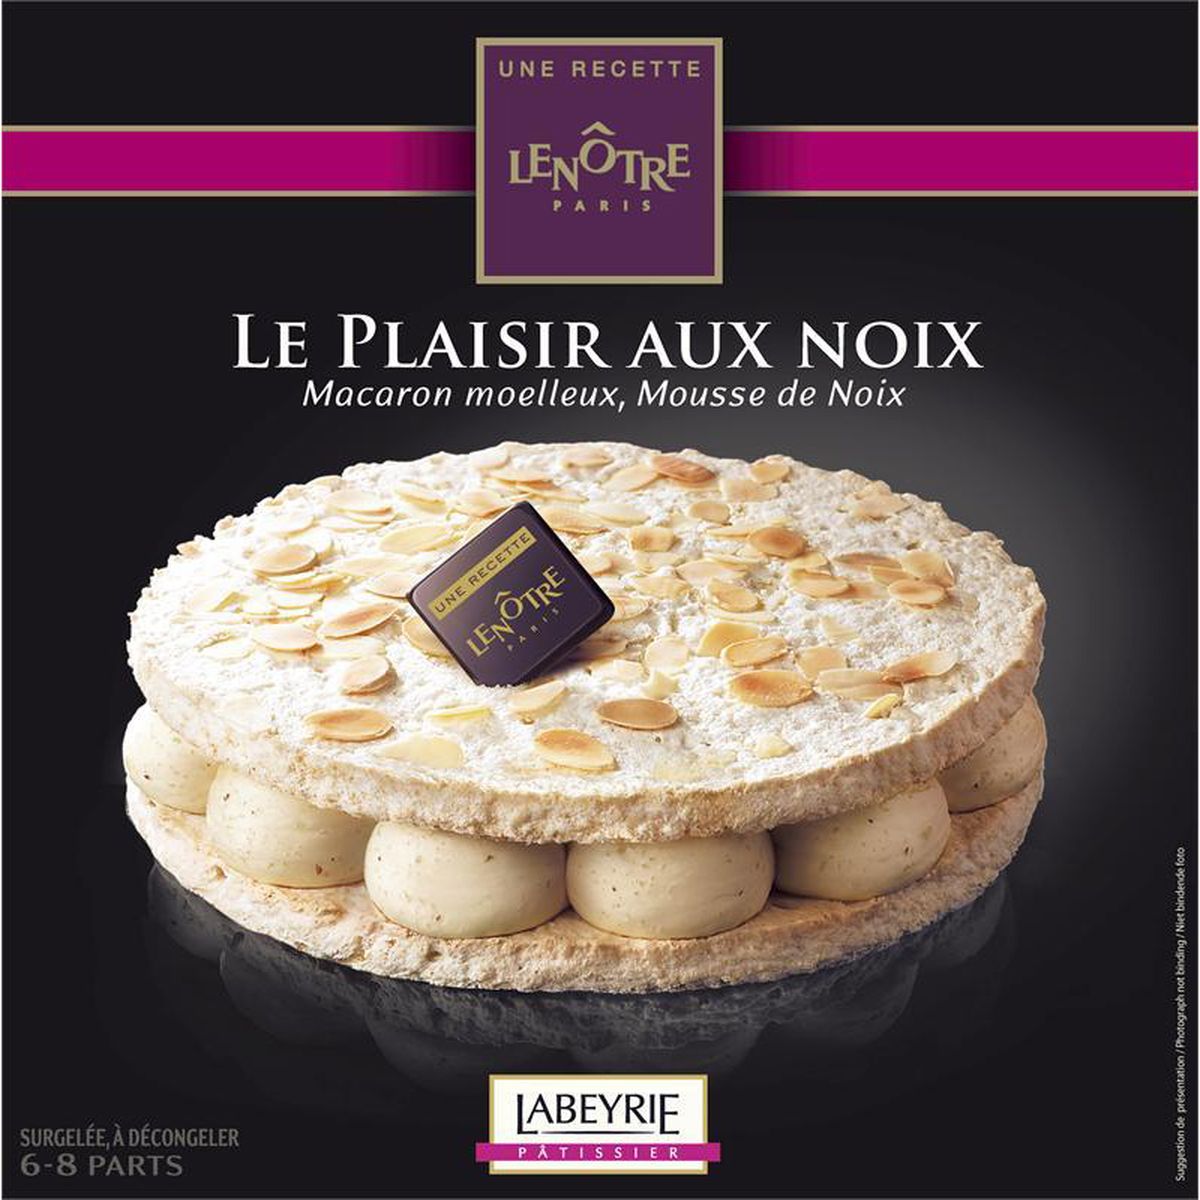 Labeyrie Le Plaisir Aux Noix Macarons Moelleux Et Mousse De Noix Une Recette Lenotre 6 8 Parts